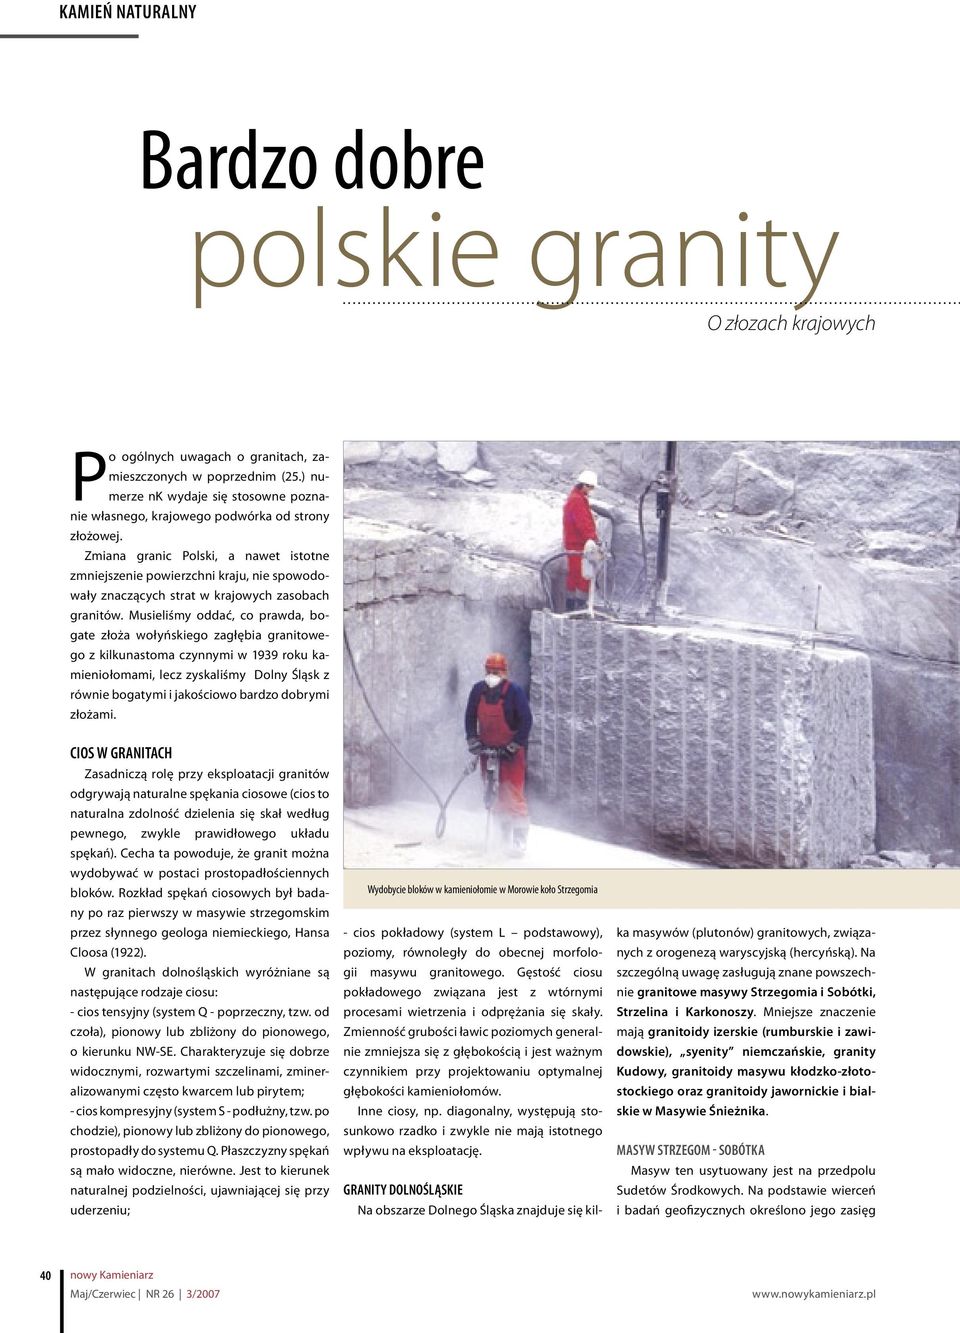 Zmiana granic Polski, a nawet istotne zmniejszenie powierzchni kraju, nie spowodowały znaczących strat w krajowych zasobach granitów.